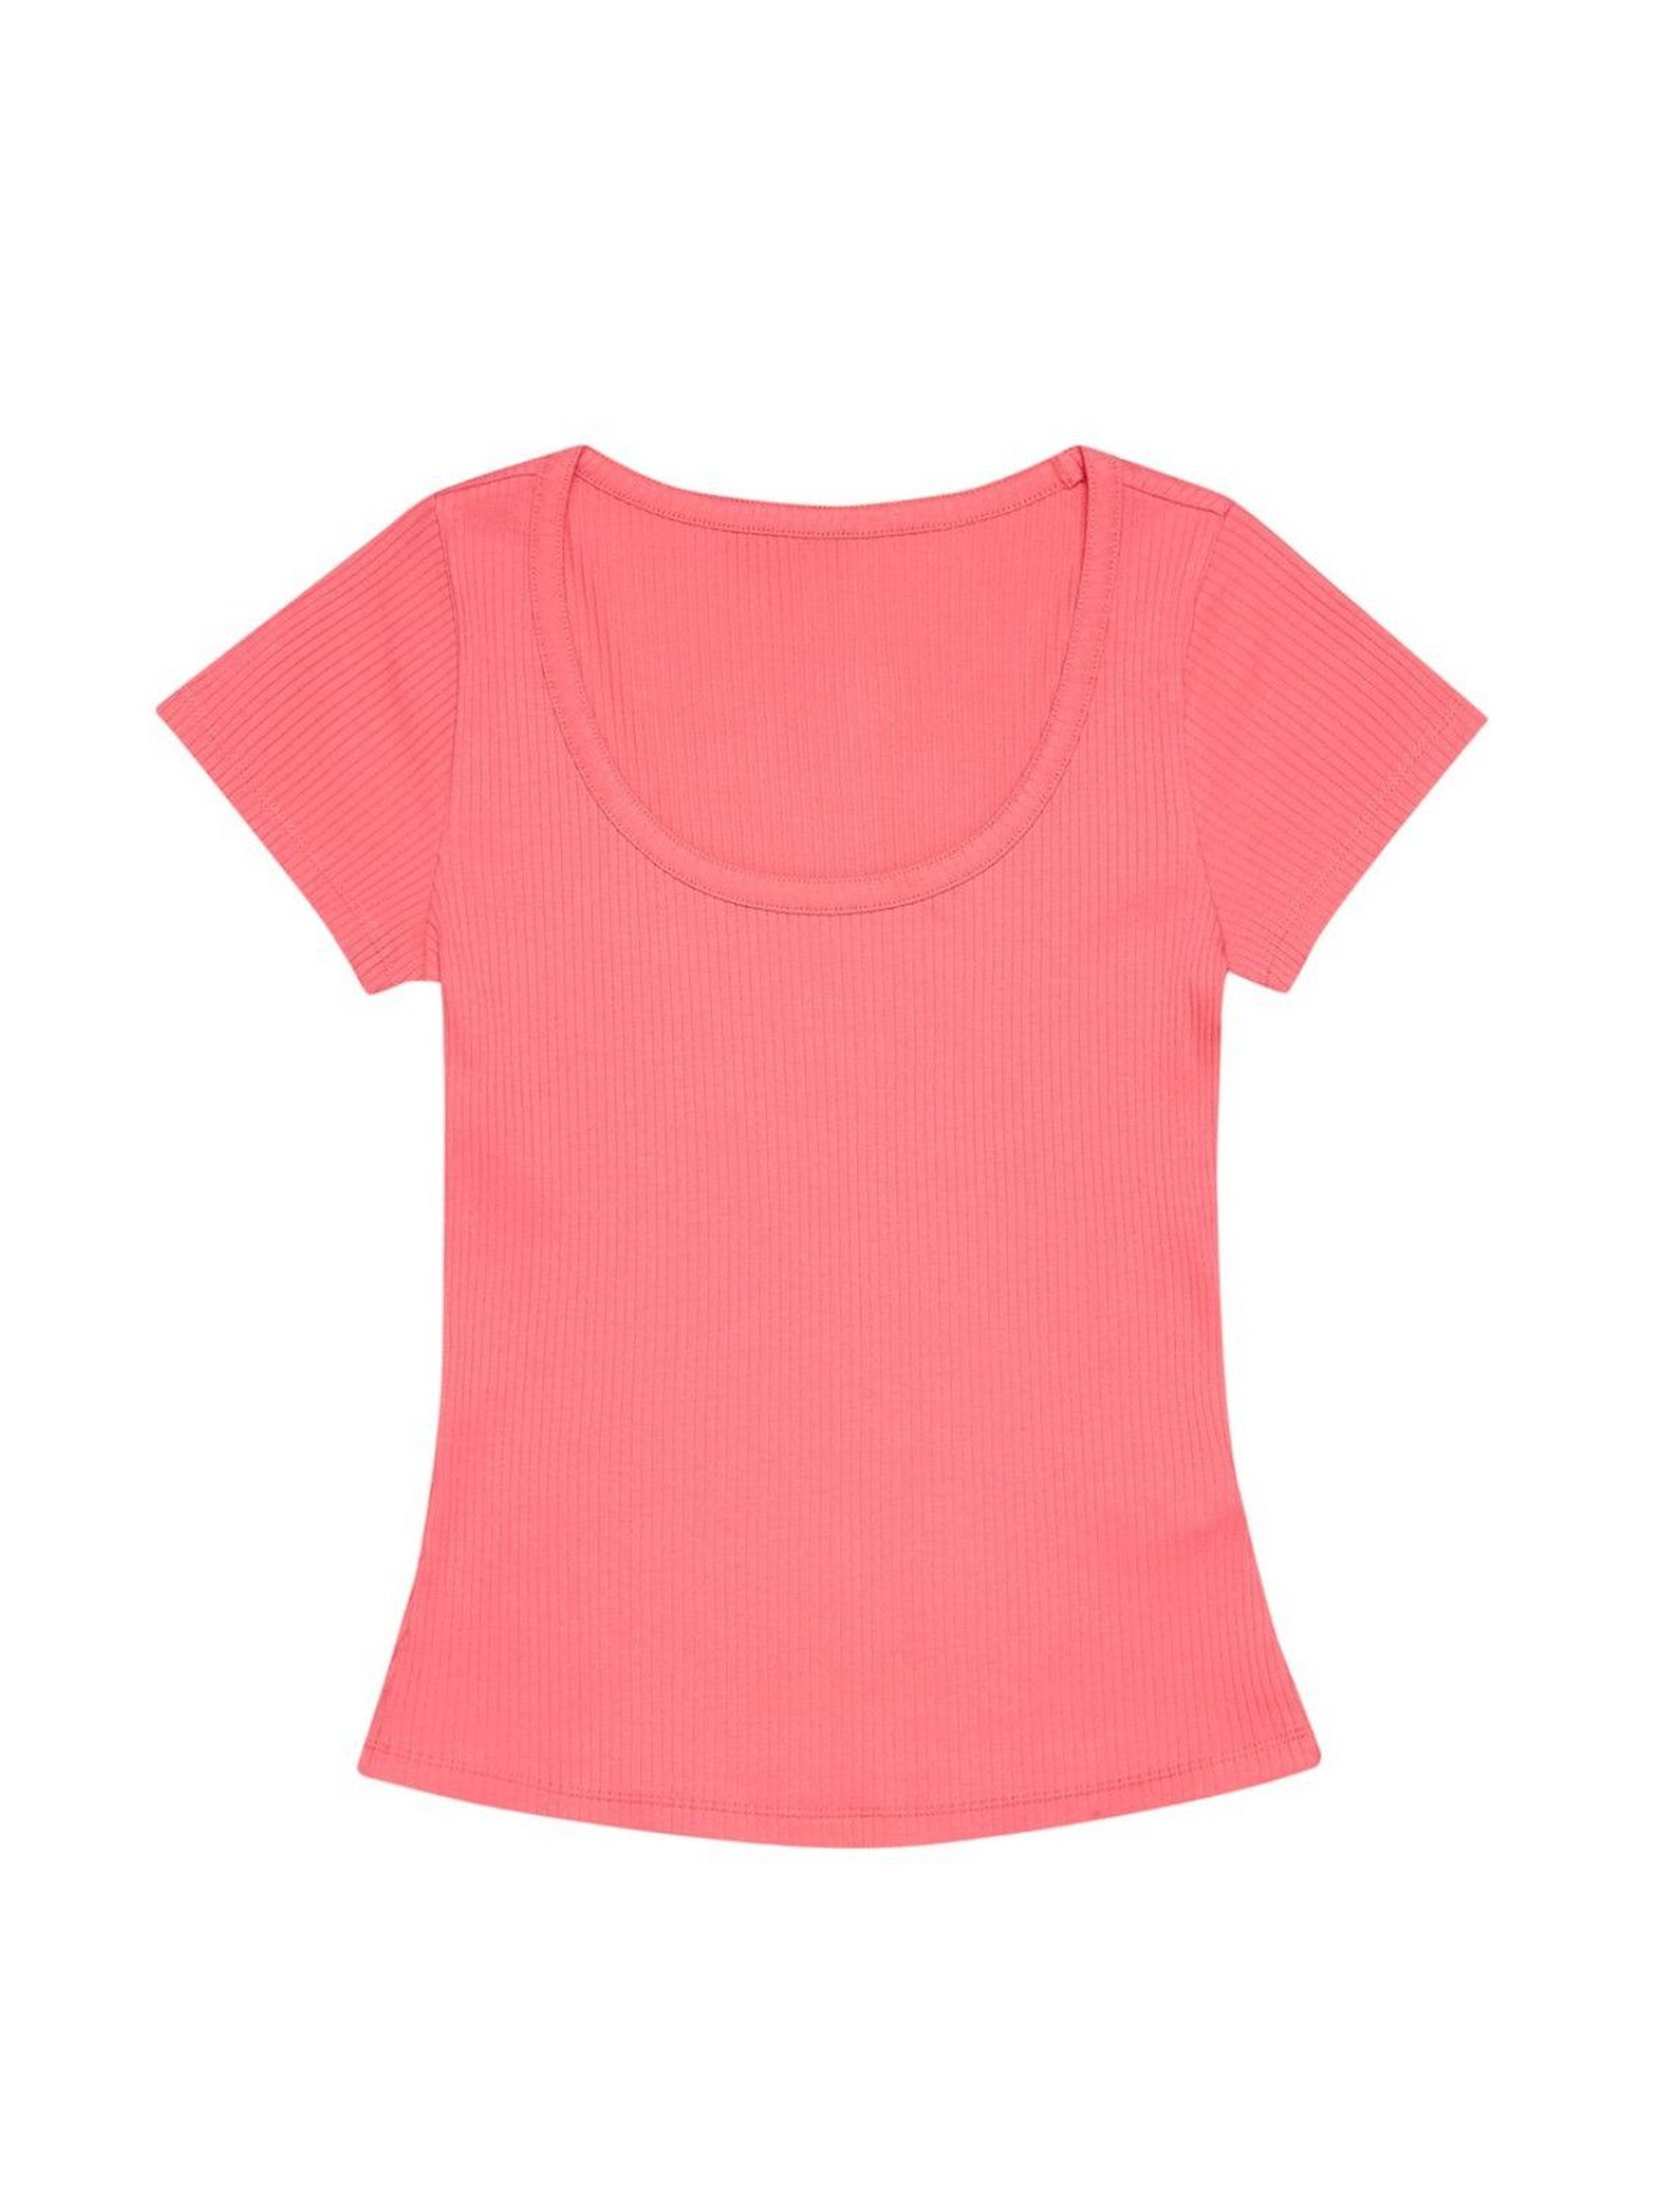 Różowy T-shirt damski na krótki rękaw